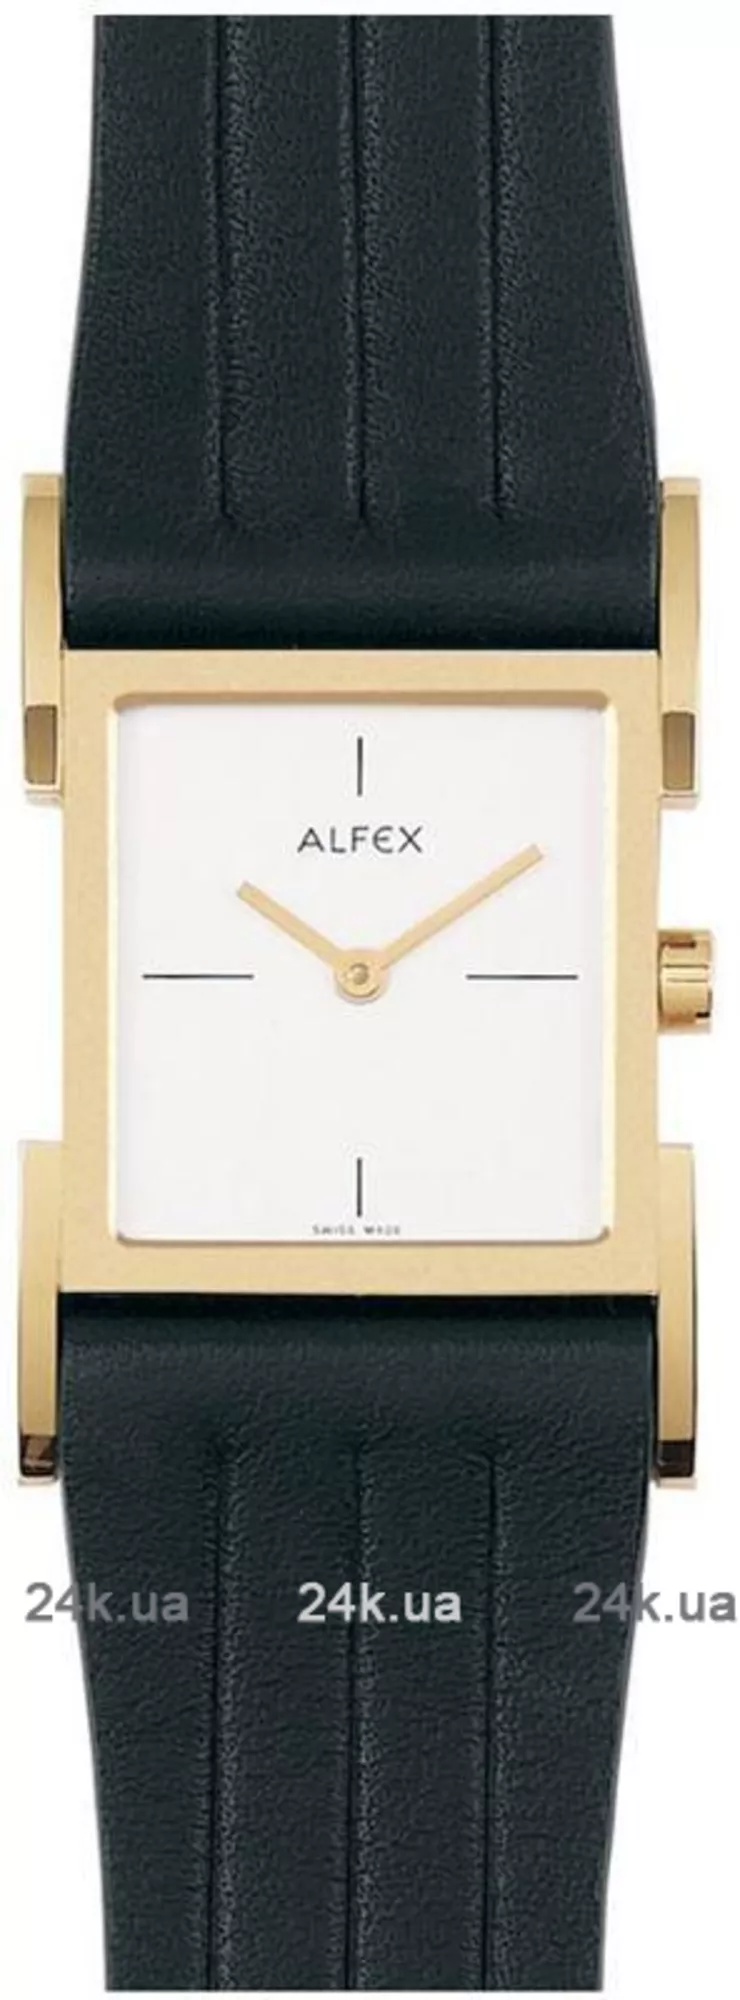 Часы Alfex 5548/025